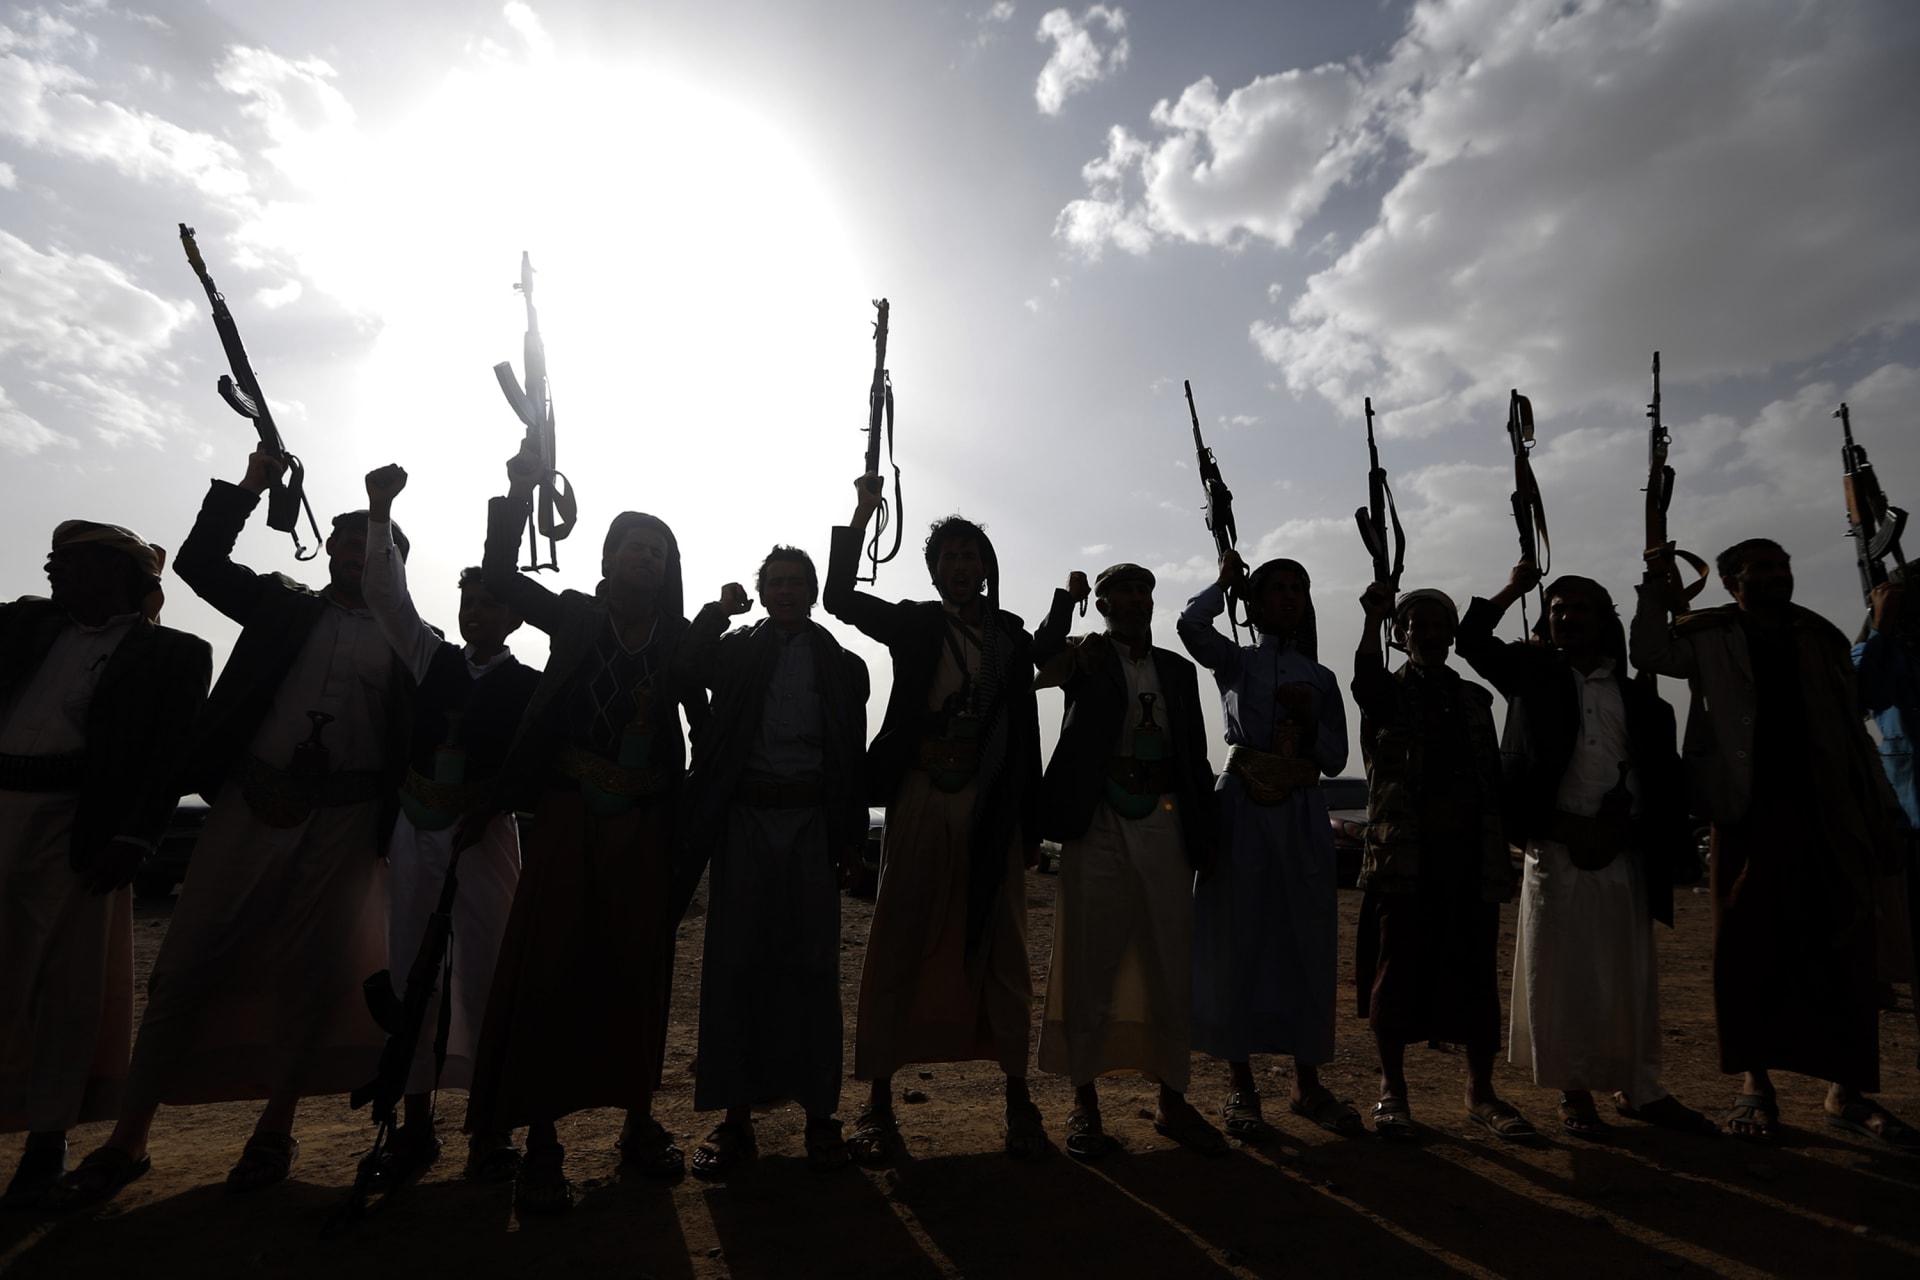 التحالف السعودي في اليمن: استهداف "دار الرئاسة" بعملية استخباراتية دقيقة